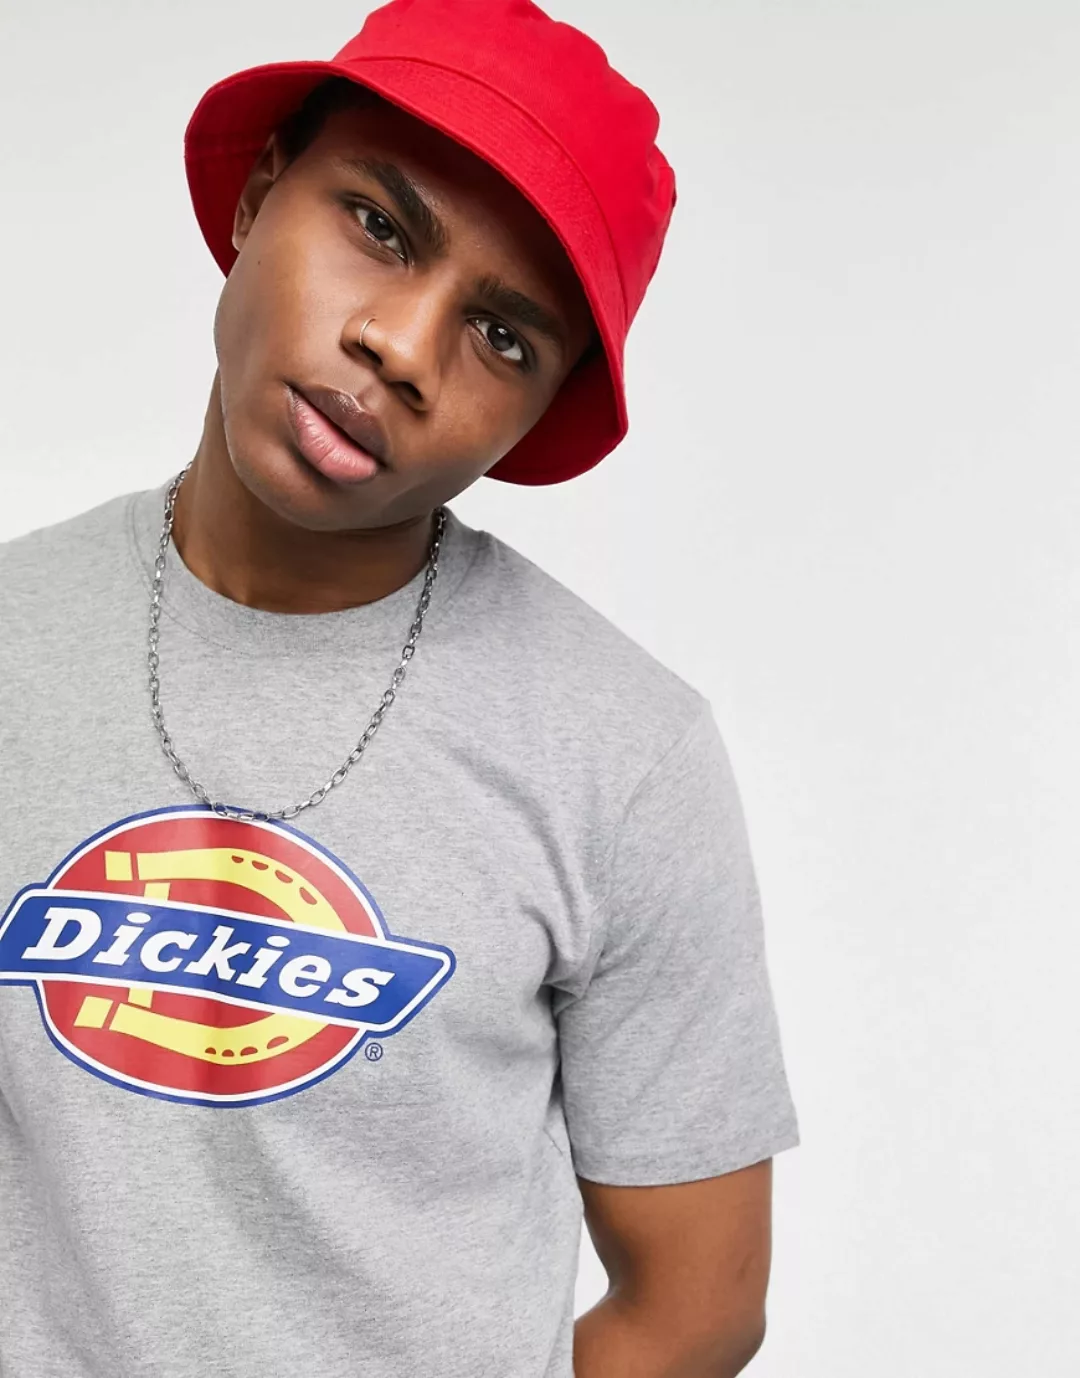 Dickies – T-Shirt mit kultigem Hufeisen-Logo in Grau günstig online kaufen